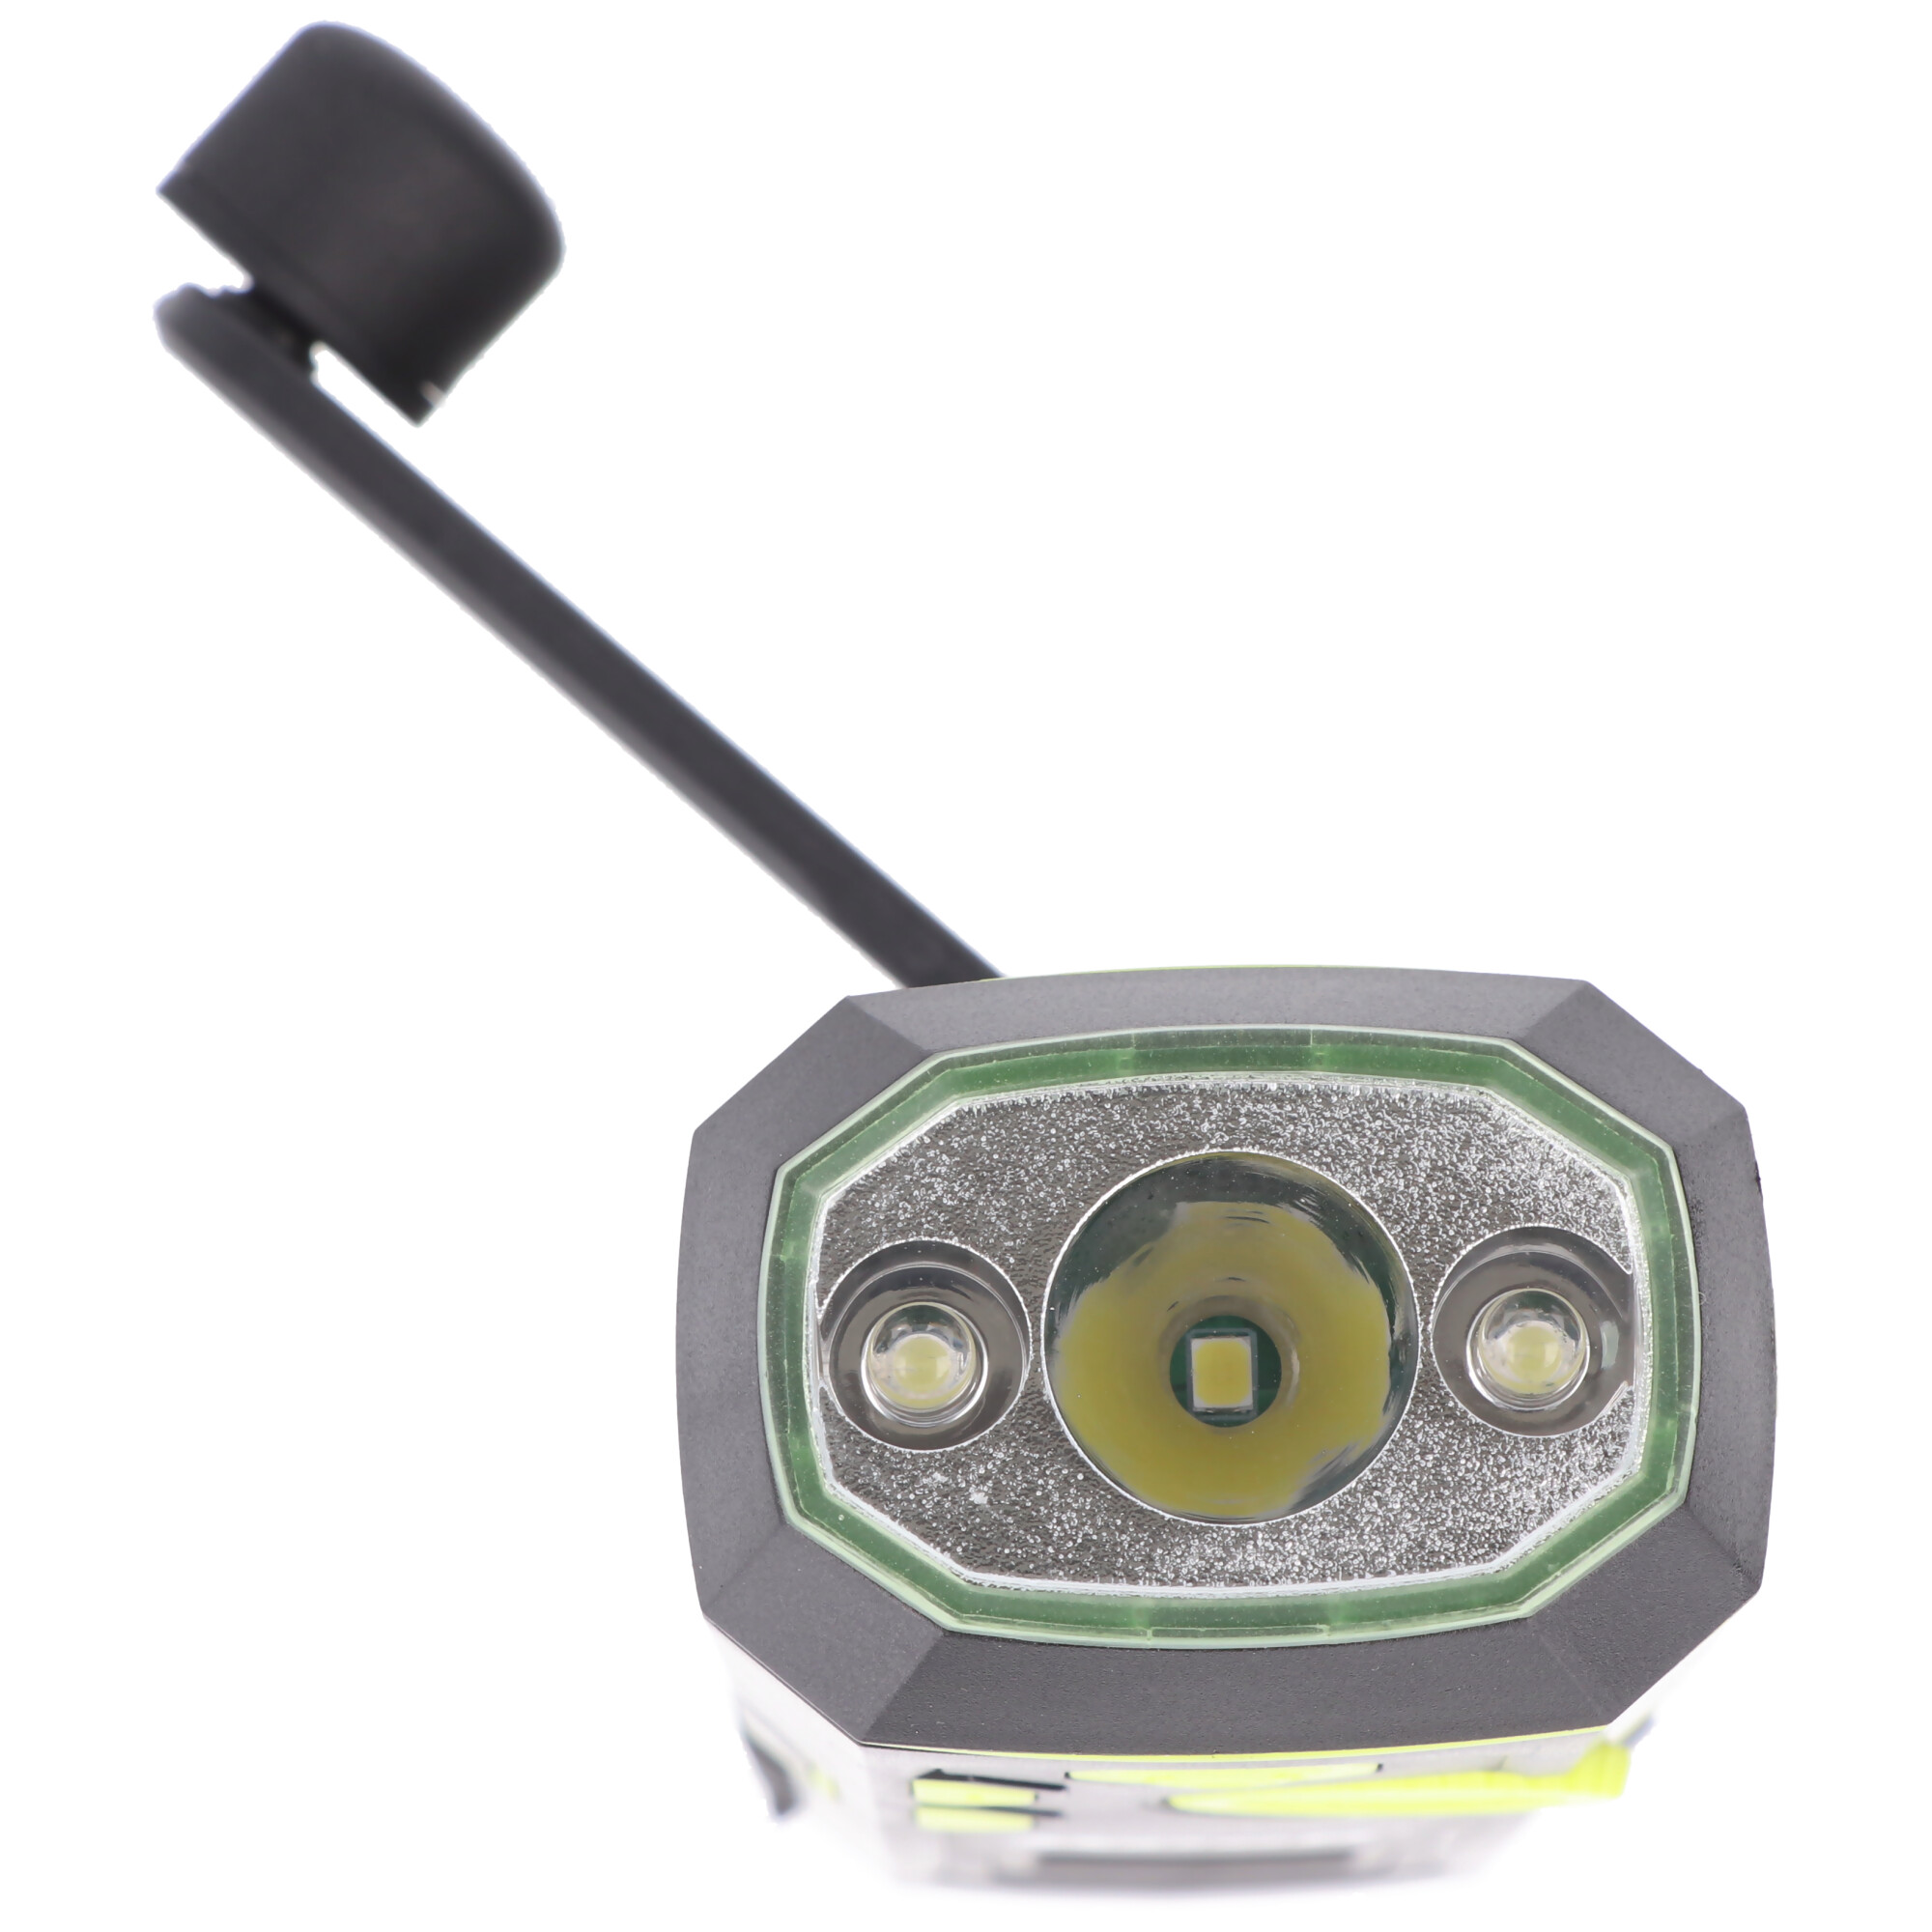 Dynamo Taschenlampe mit FM Radio, Alarm und Powerbank-Funktion, Anti-Blackout, aufladbare Notfall-Leuchte, 4in1 LED-Taschenlampe